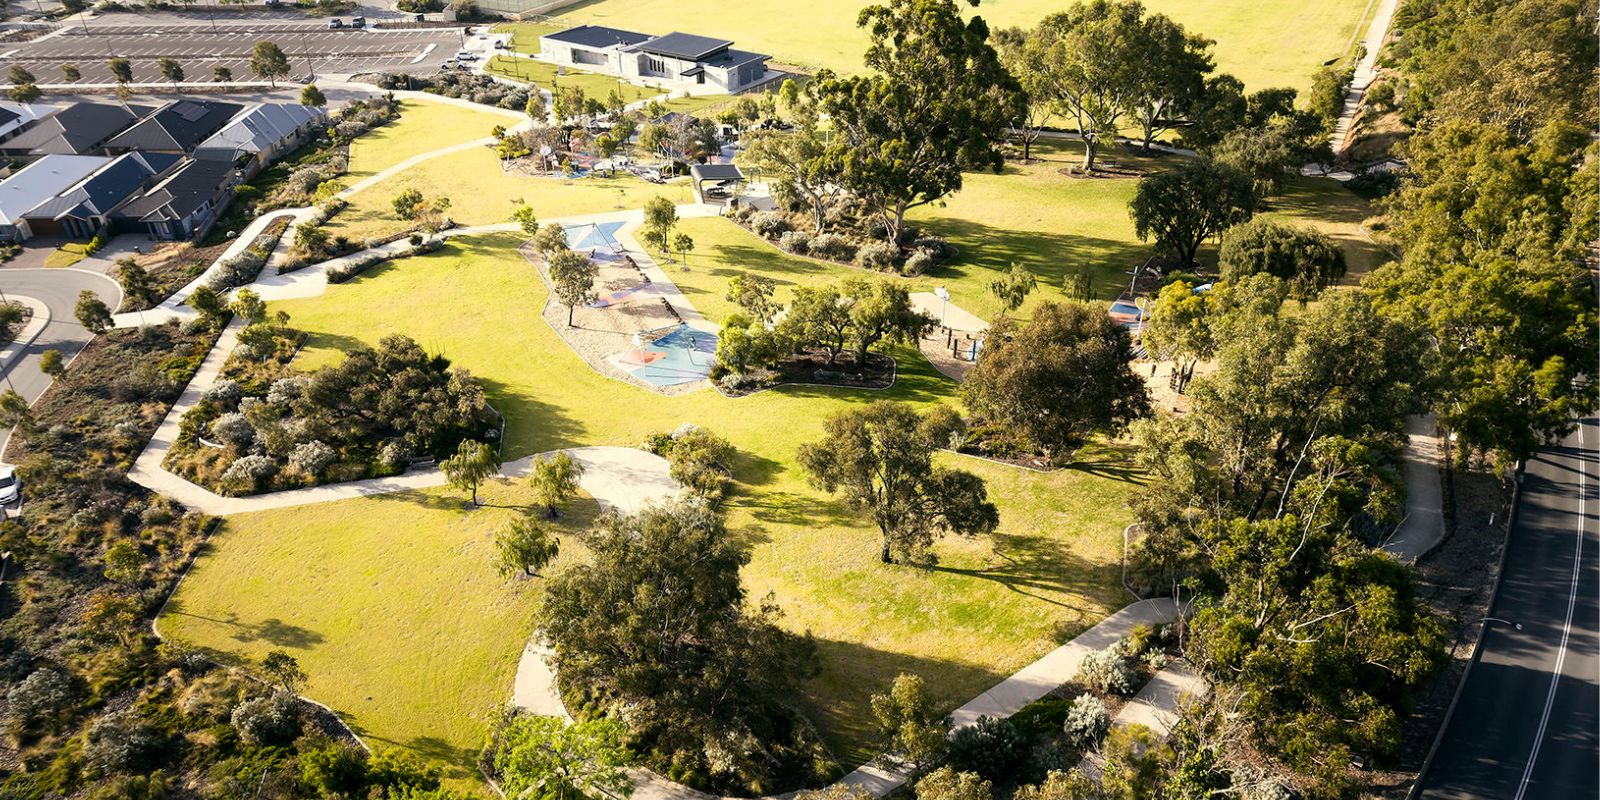 Honeywood, Wandi, aerial view of the community